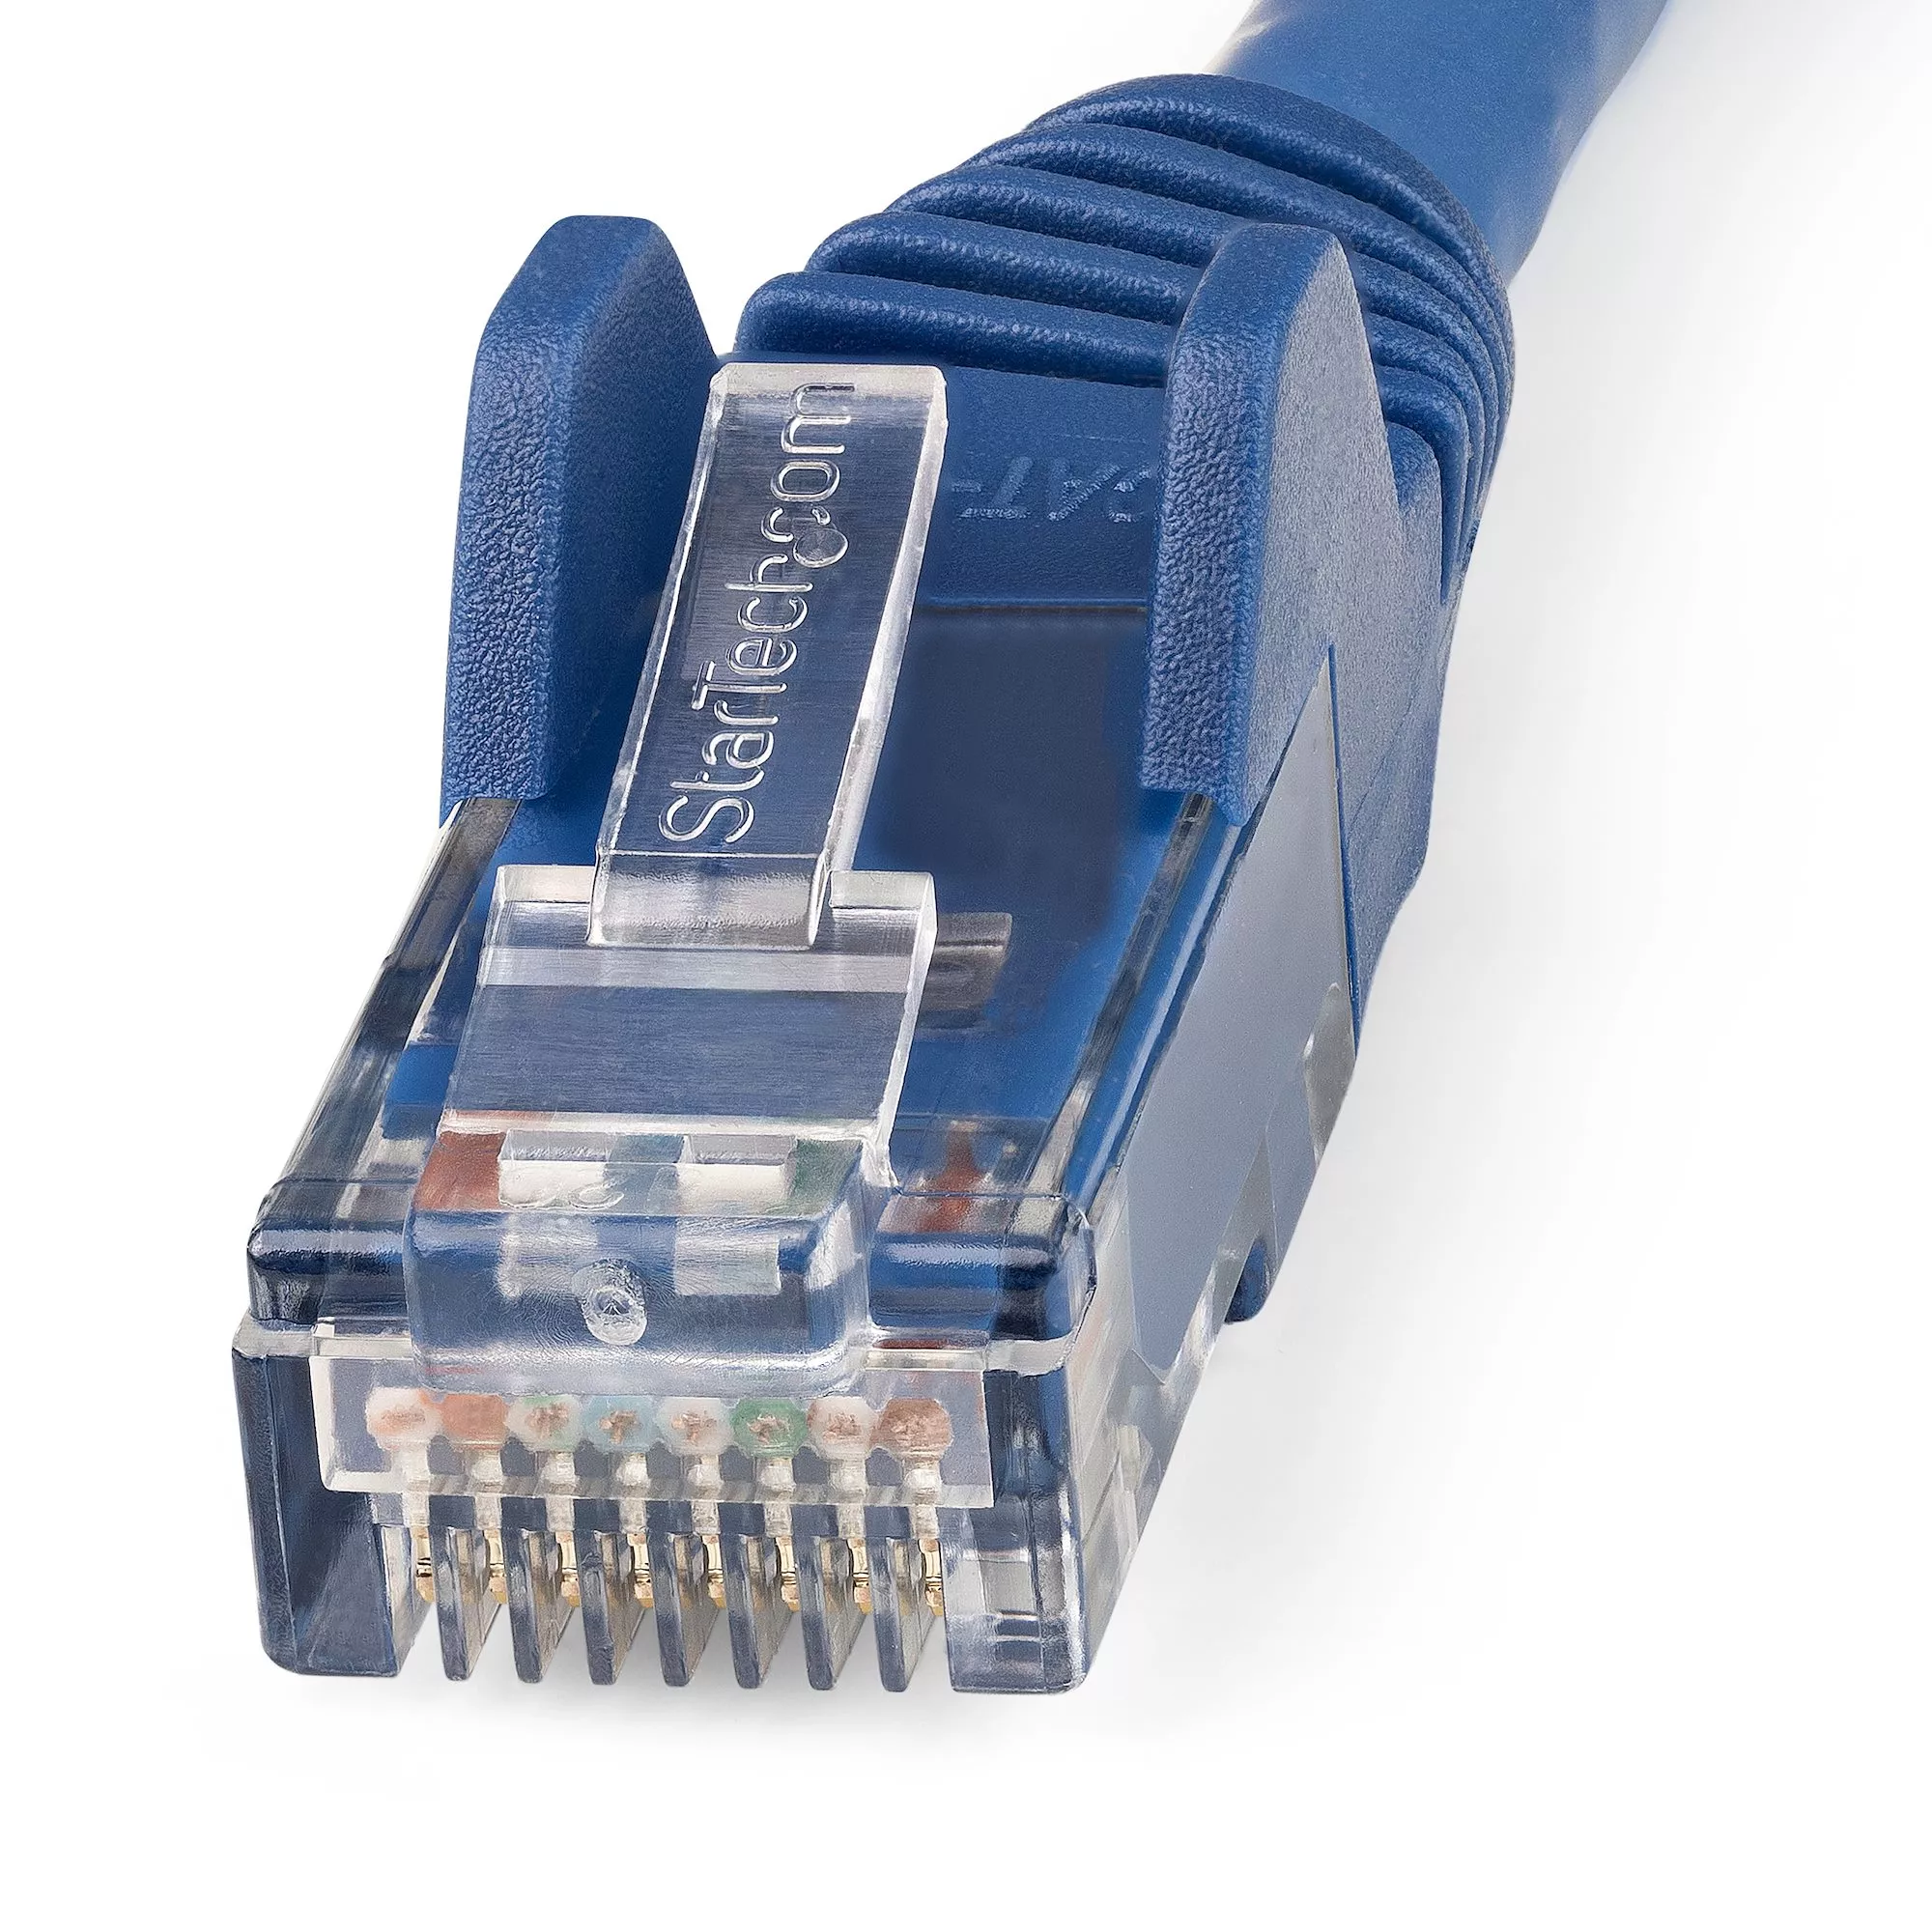 Vente StarTech.com Câble Ethernet CAT6 15m - LSZH (Low StarTech.com au meilleur prix - visuel 2